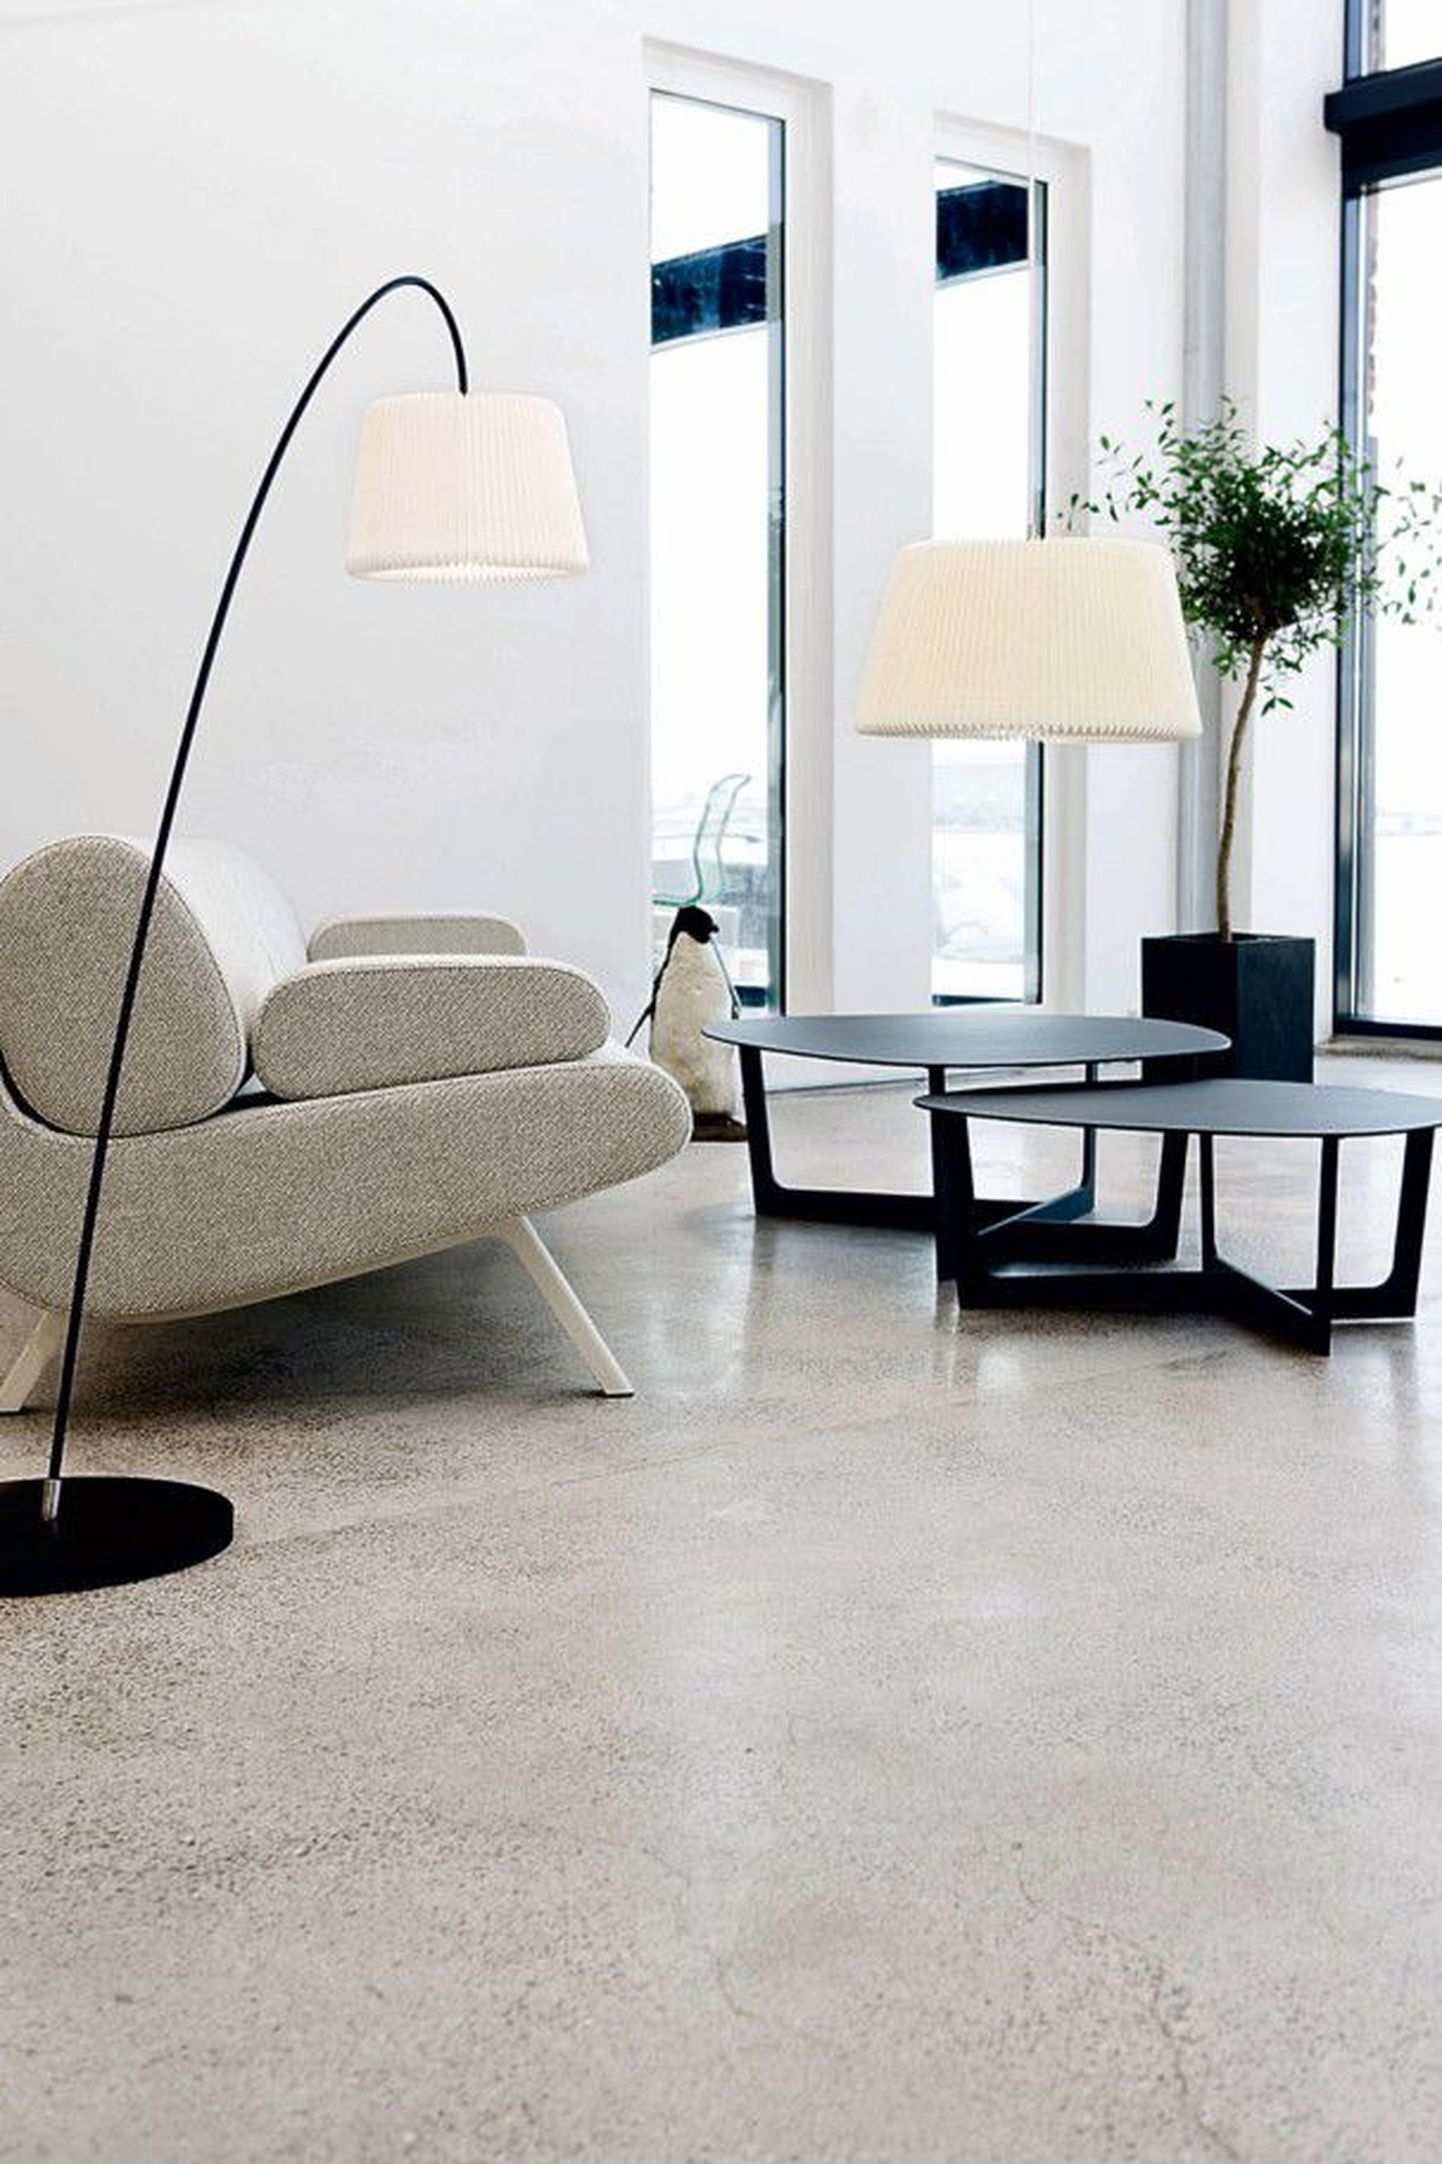 Привлекает внимание: диван 
Duplo, рожденный в сотрудничестве датской фирмы Erik Jørgensen и дизайнерского бюро Ernst Jensen, завоевал престижный приз журнала Wallpaper как лучший диван 2011 года.